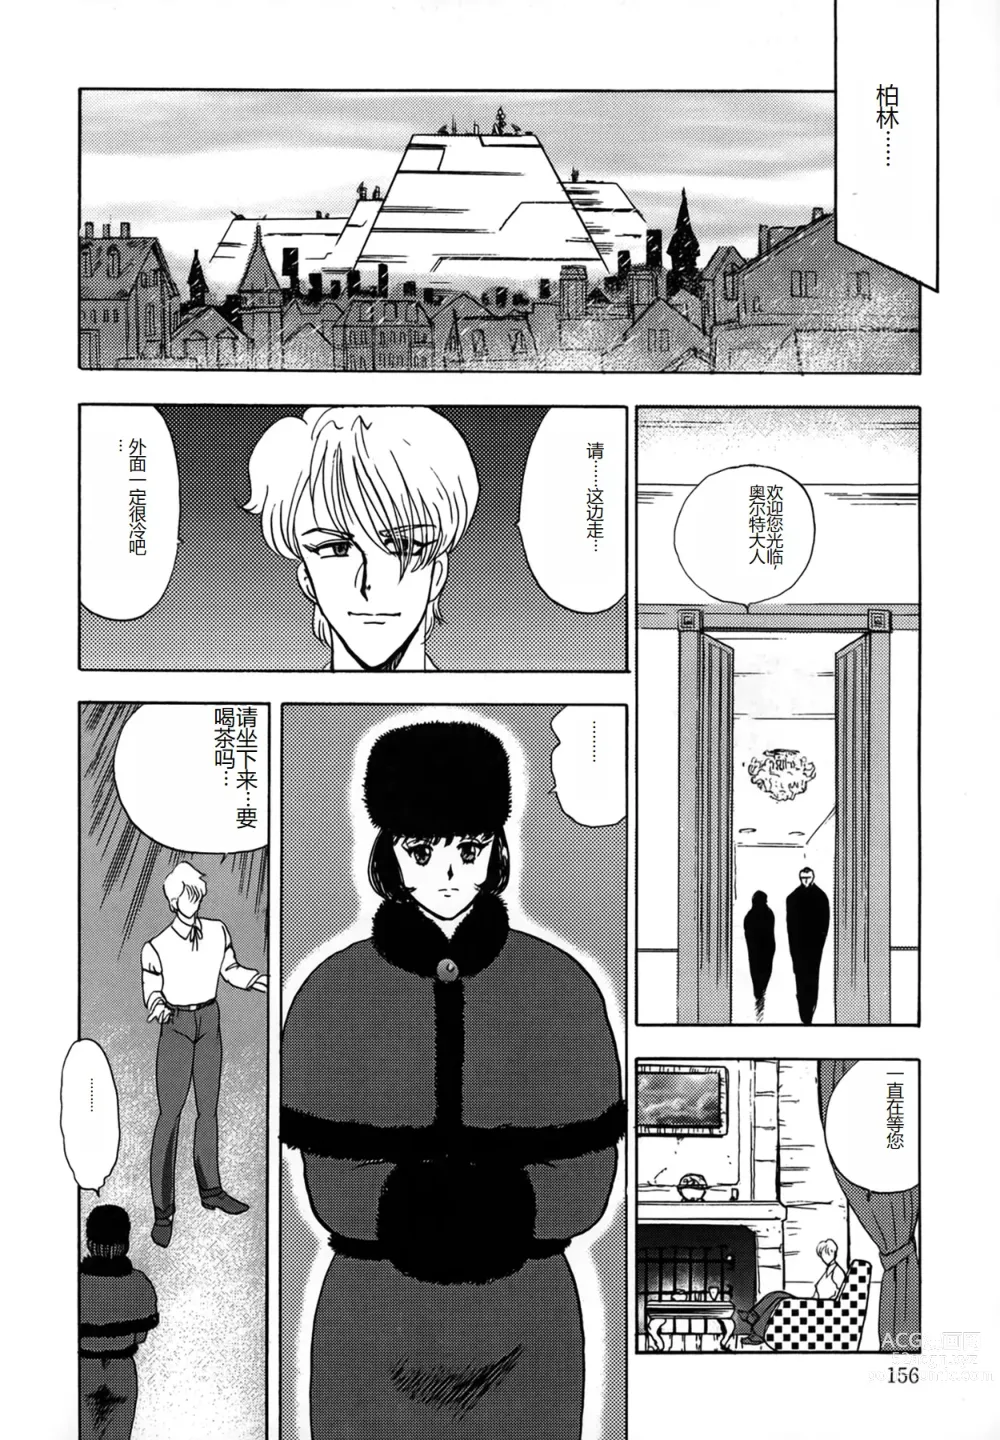 Page 156 of manga Inbi Teikoku